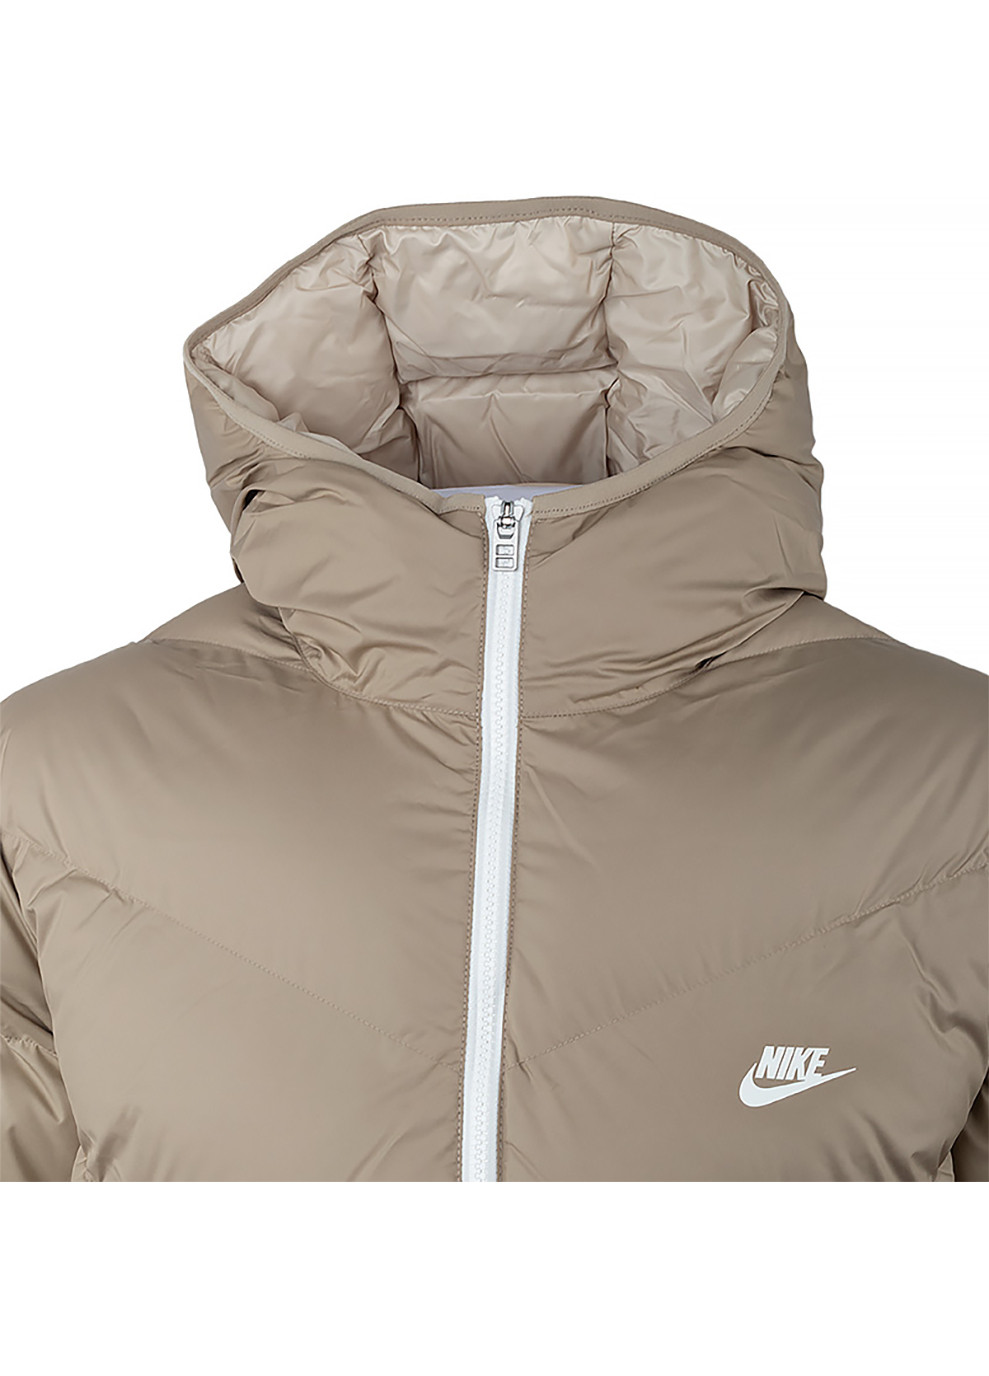 Бежевая демисезонная мужская куртка m nk sf wr pl-fld hd parka бежевый s (dr9609-247 s) Nike